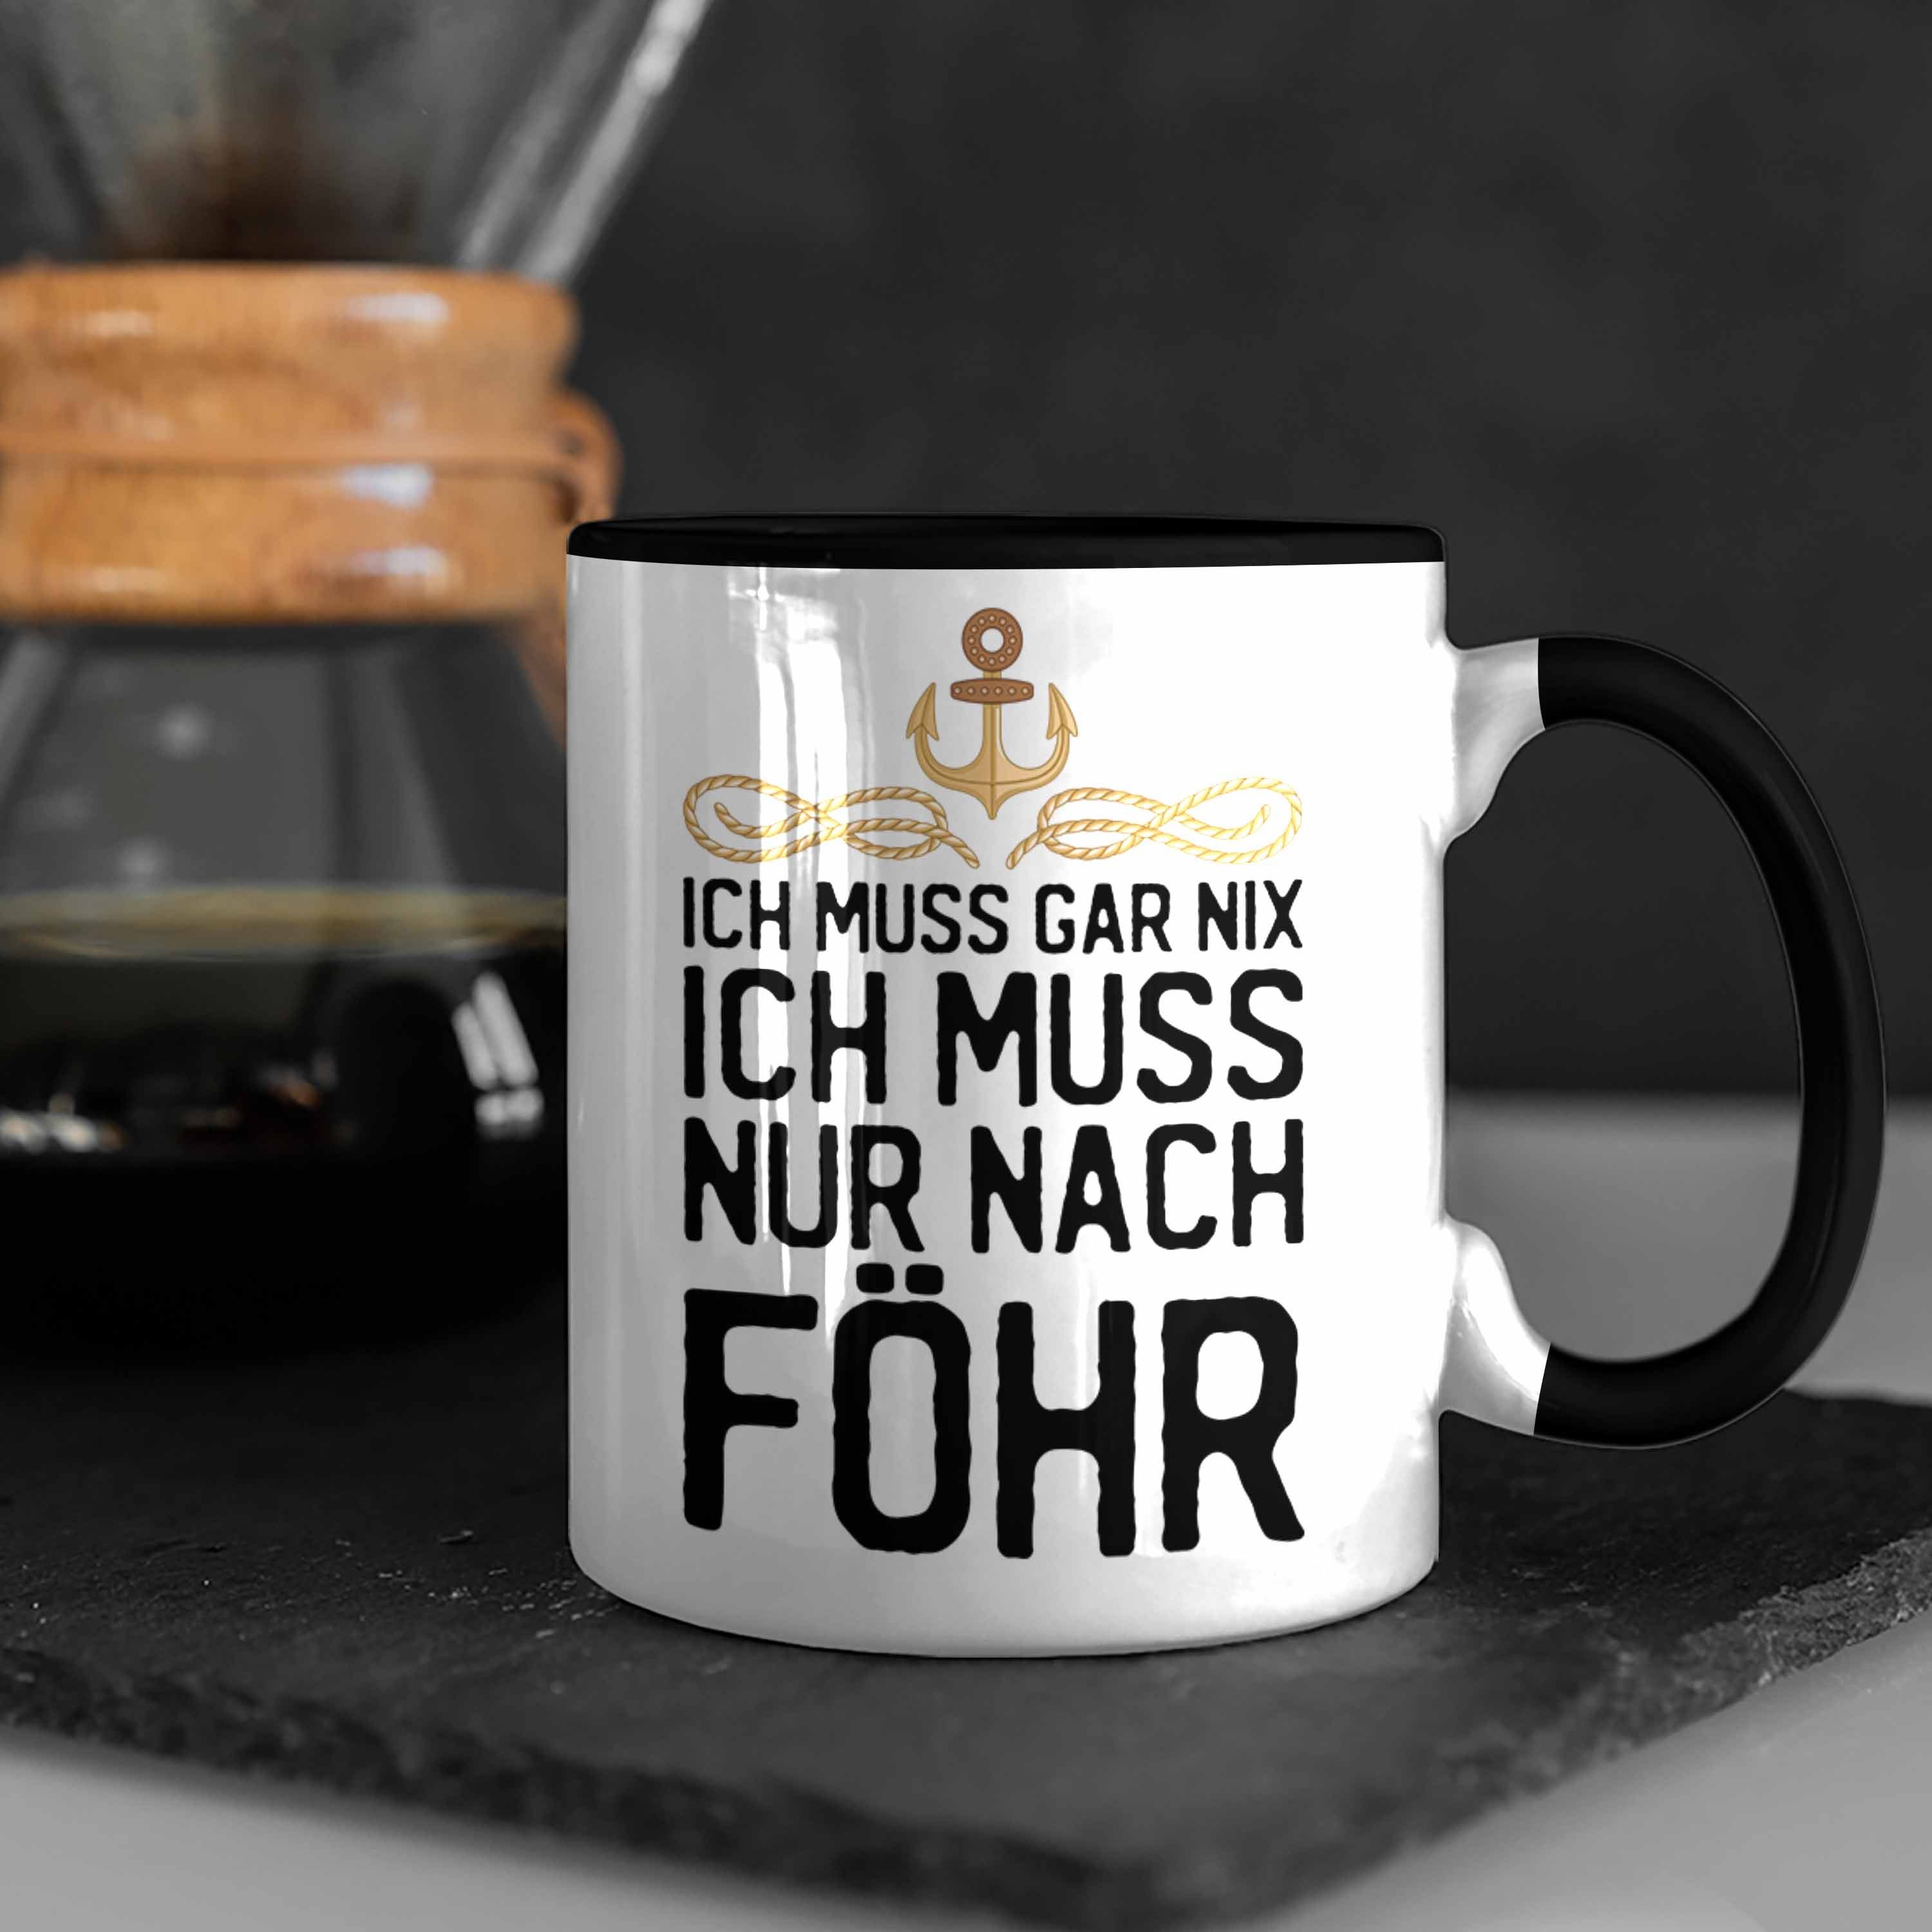 Trendation Tasse Kaffeetasse - Gar Föhr Geschenk Nix Ich Ich Nach Nur Muss Schwarz Föhr Tasse Insel Trendation Geschenkiee Muss